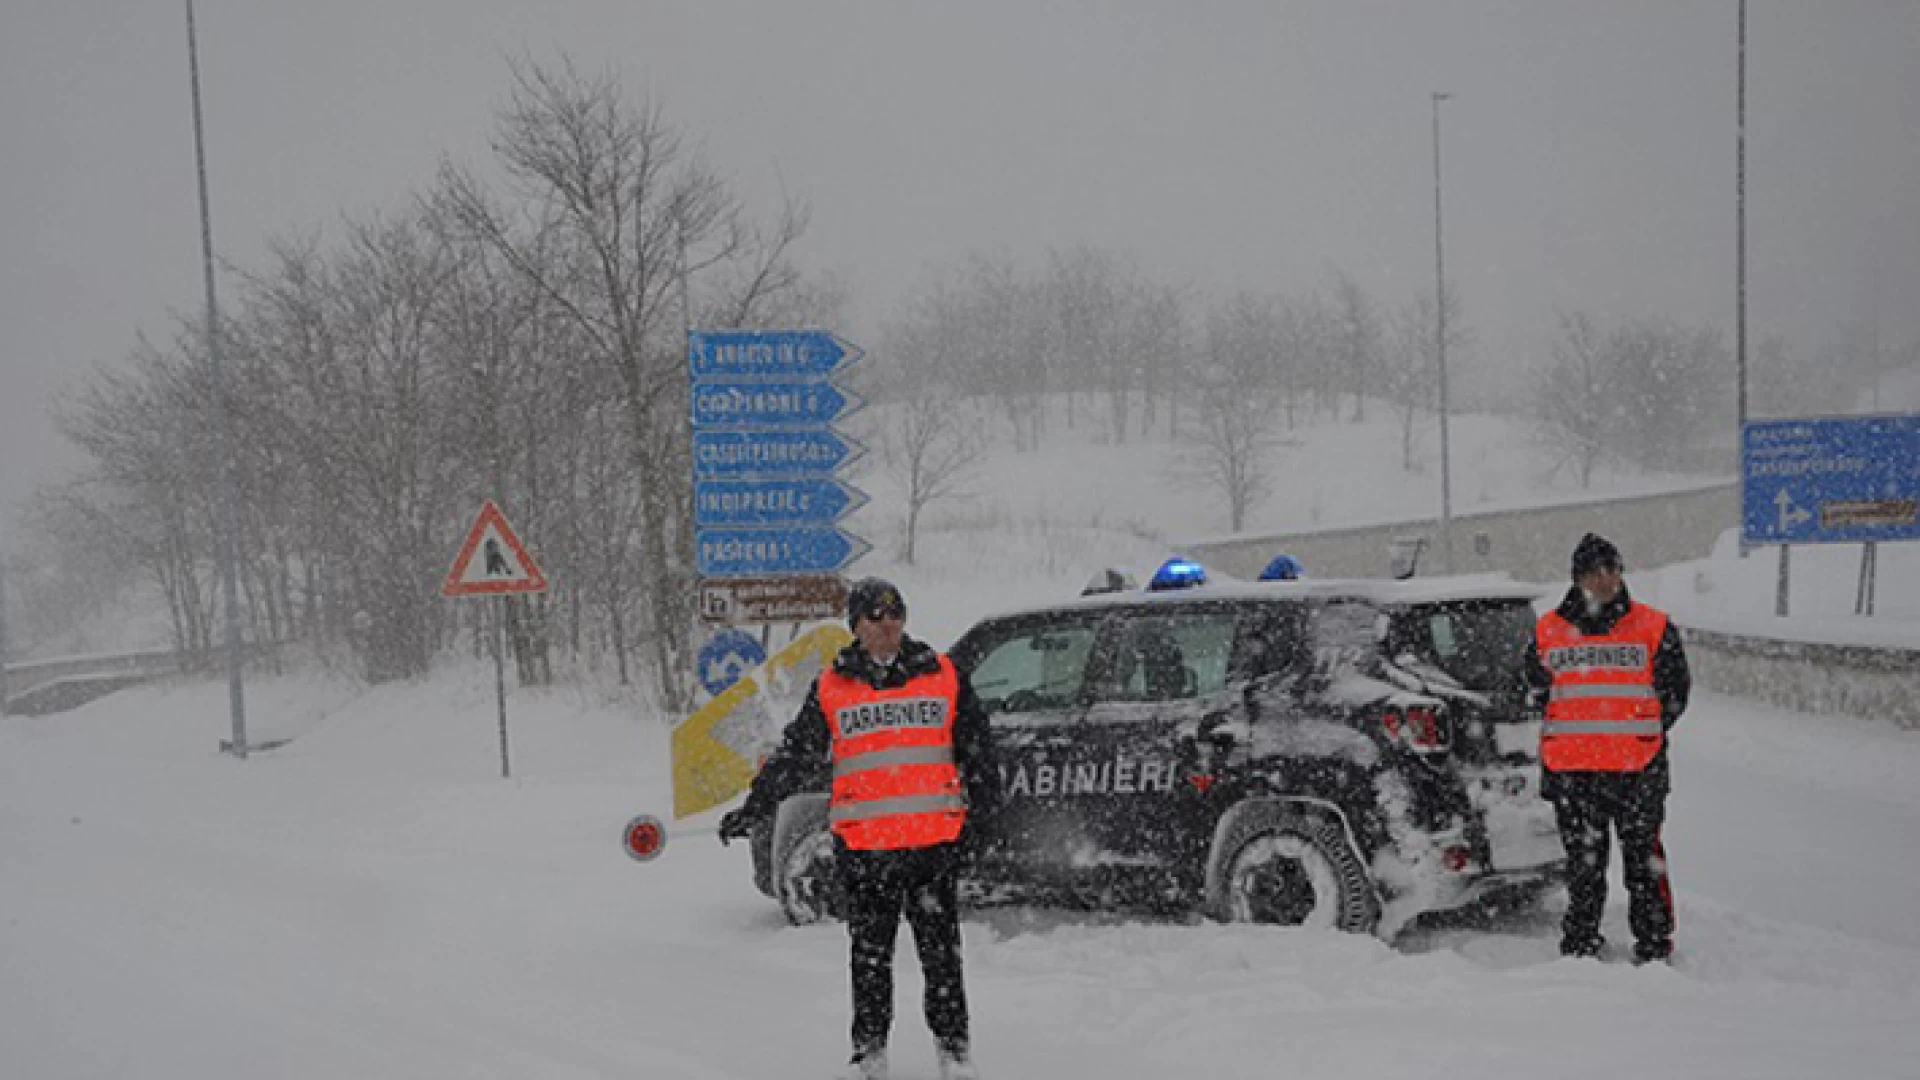 Isernia: Emergenza gelo e neve, Carabinieri in prima linea per assistere la cittadinanza su tutto il territorio della provincia.